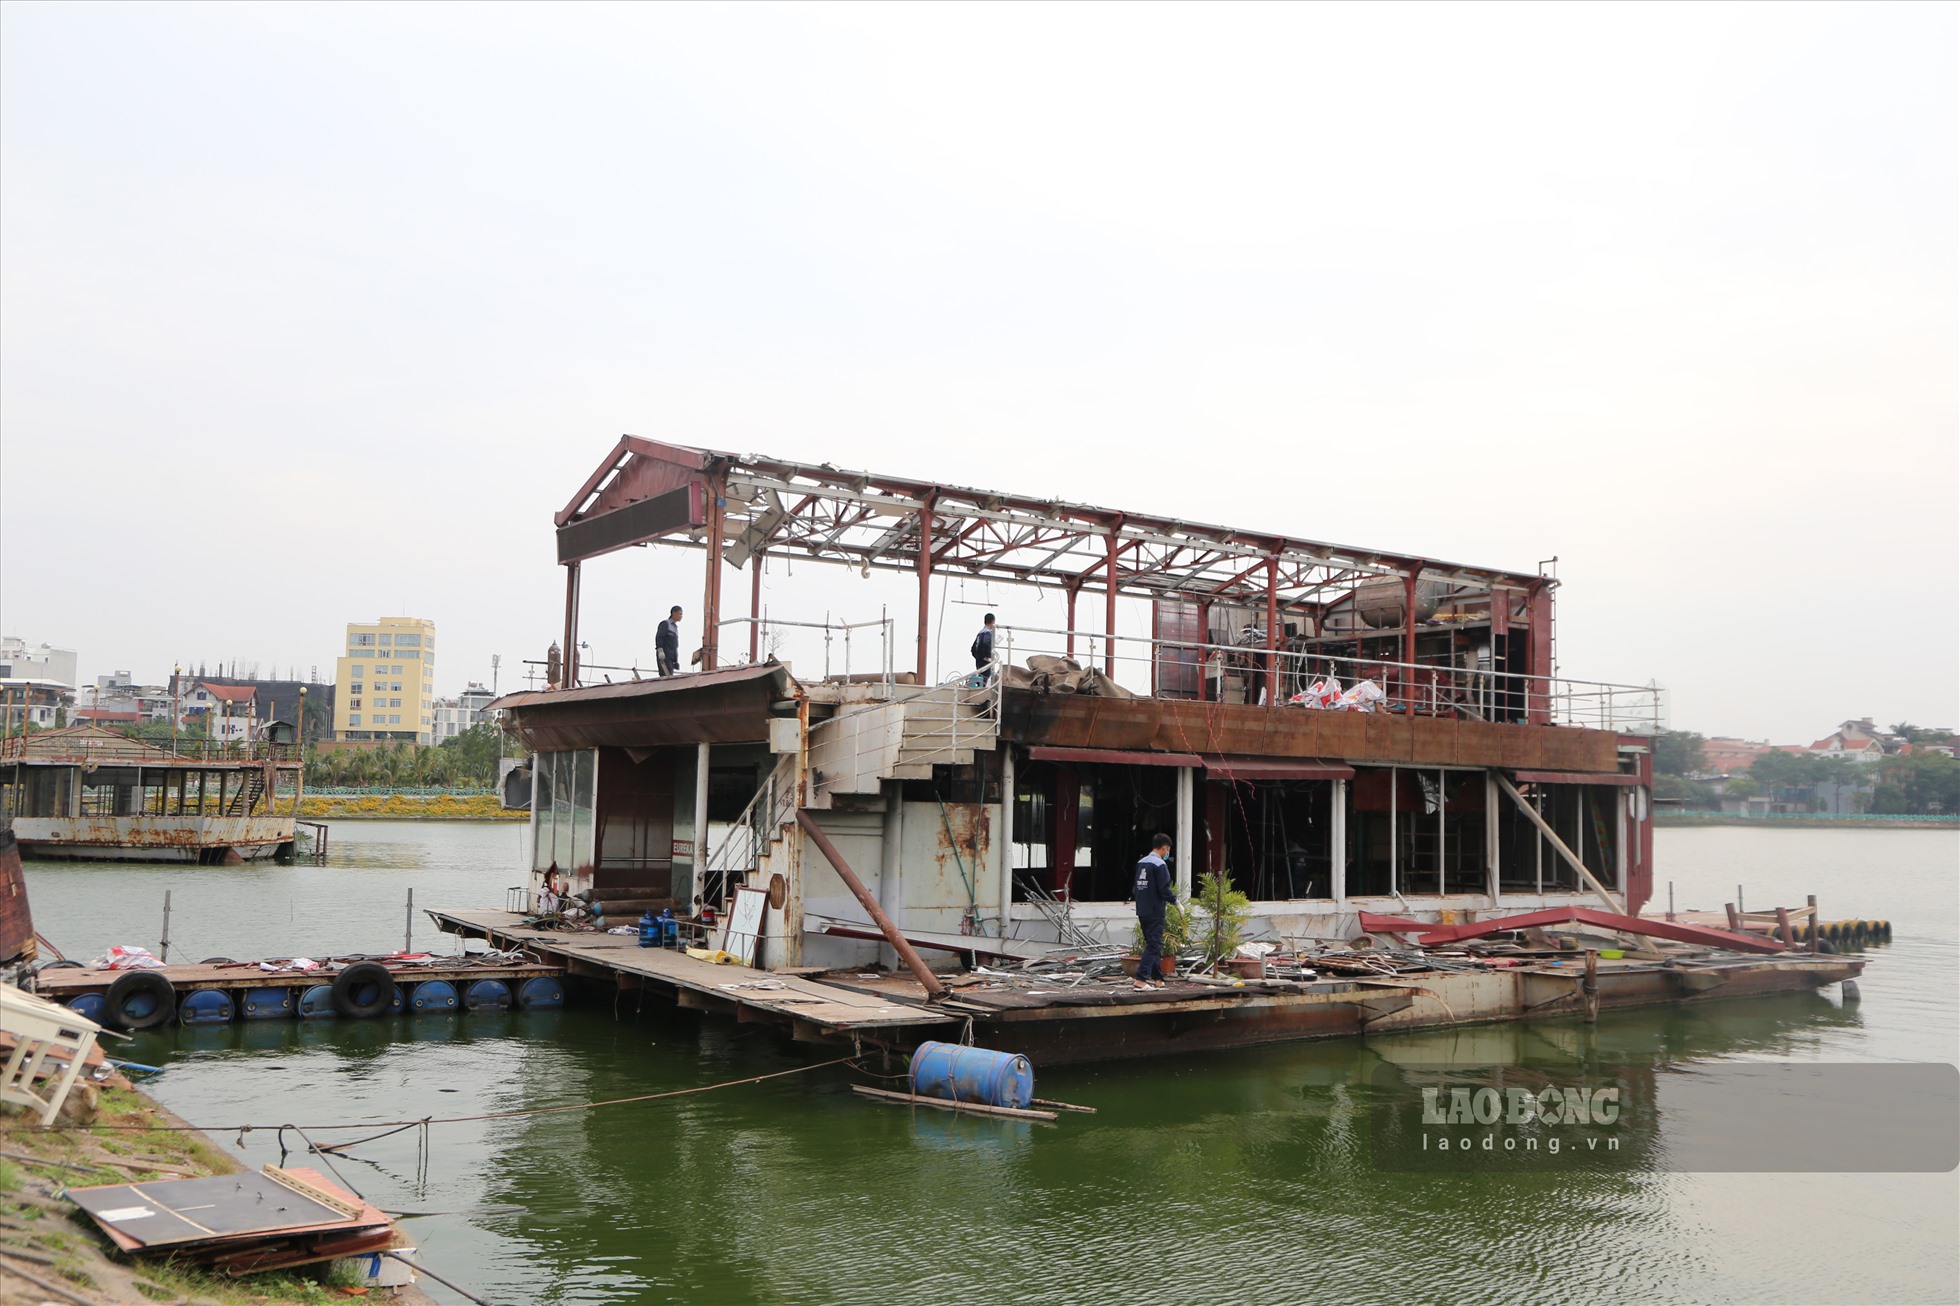 Chiếc du thuyền được tháo dỡ là một trong bảy chiếc bị bỏ hoang ở ở Đầm (phường Nhật Tân, quận Tây Hồ). Sáng 19.10, theo ghi nhận của Lao Động, UBND quận Tây Hồ lập chốt, điều máy cẩu tới phối hợp với doanh nghiệp tháo dỡ tàu thuyền bị bỏ hoang tại đây.